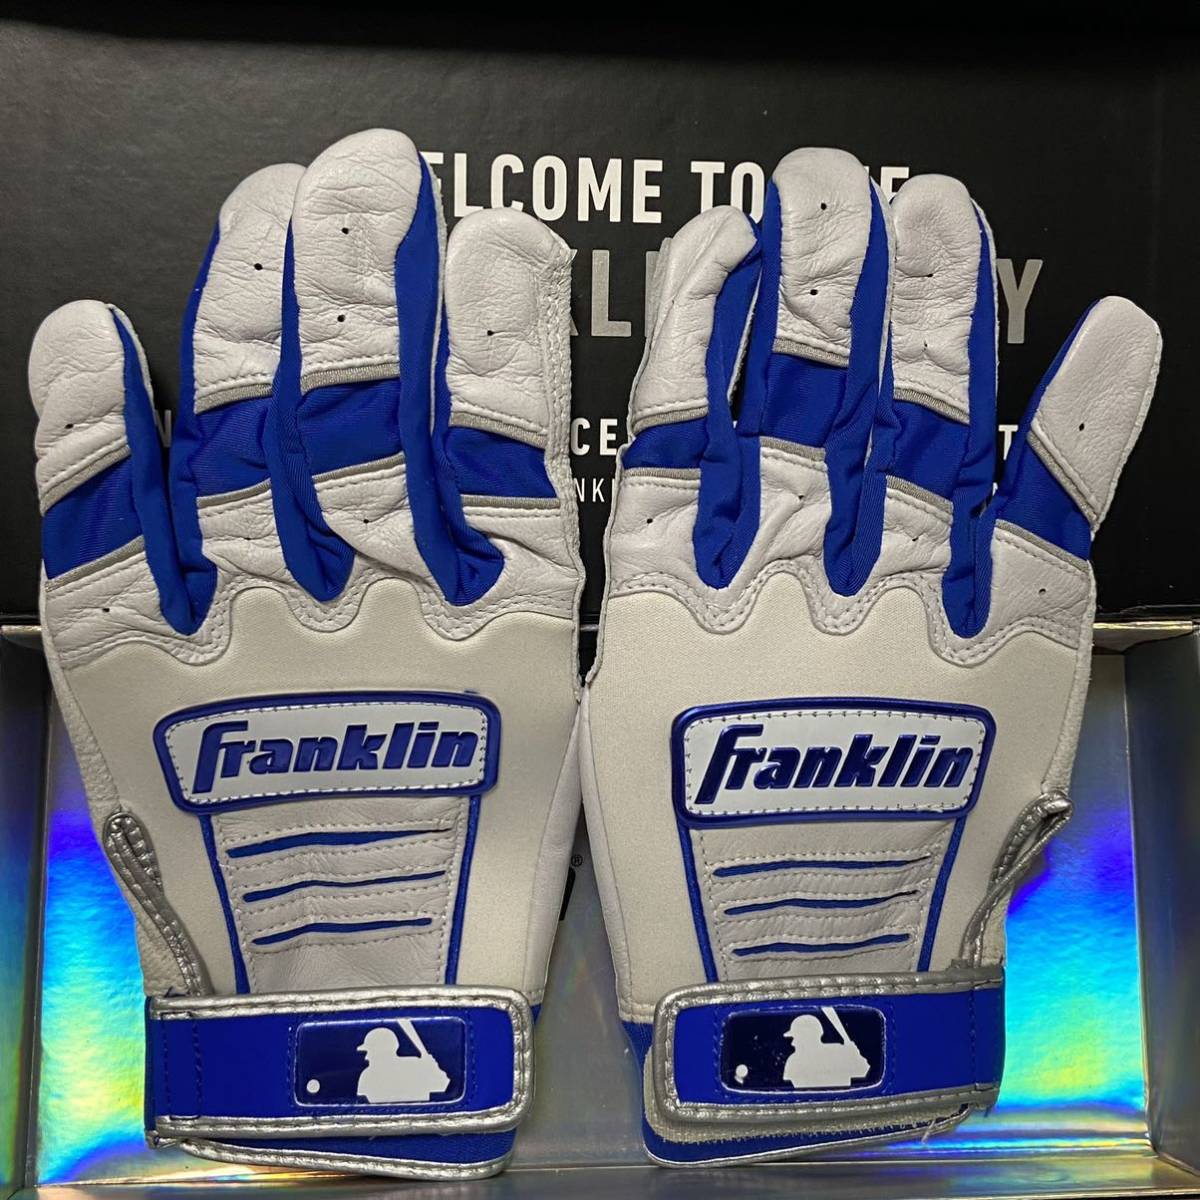 新品 Franklin CFX Pro ホワイト ロイヤル バッティンググローブ Mサイズ フランクリン 野球 革手 バッテ グラブ 白 青 限定